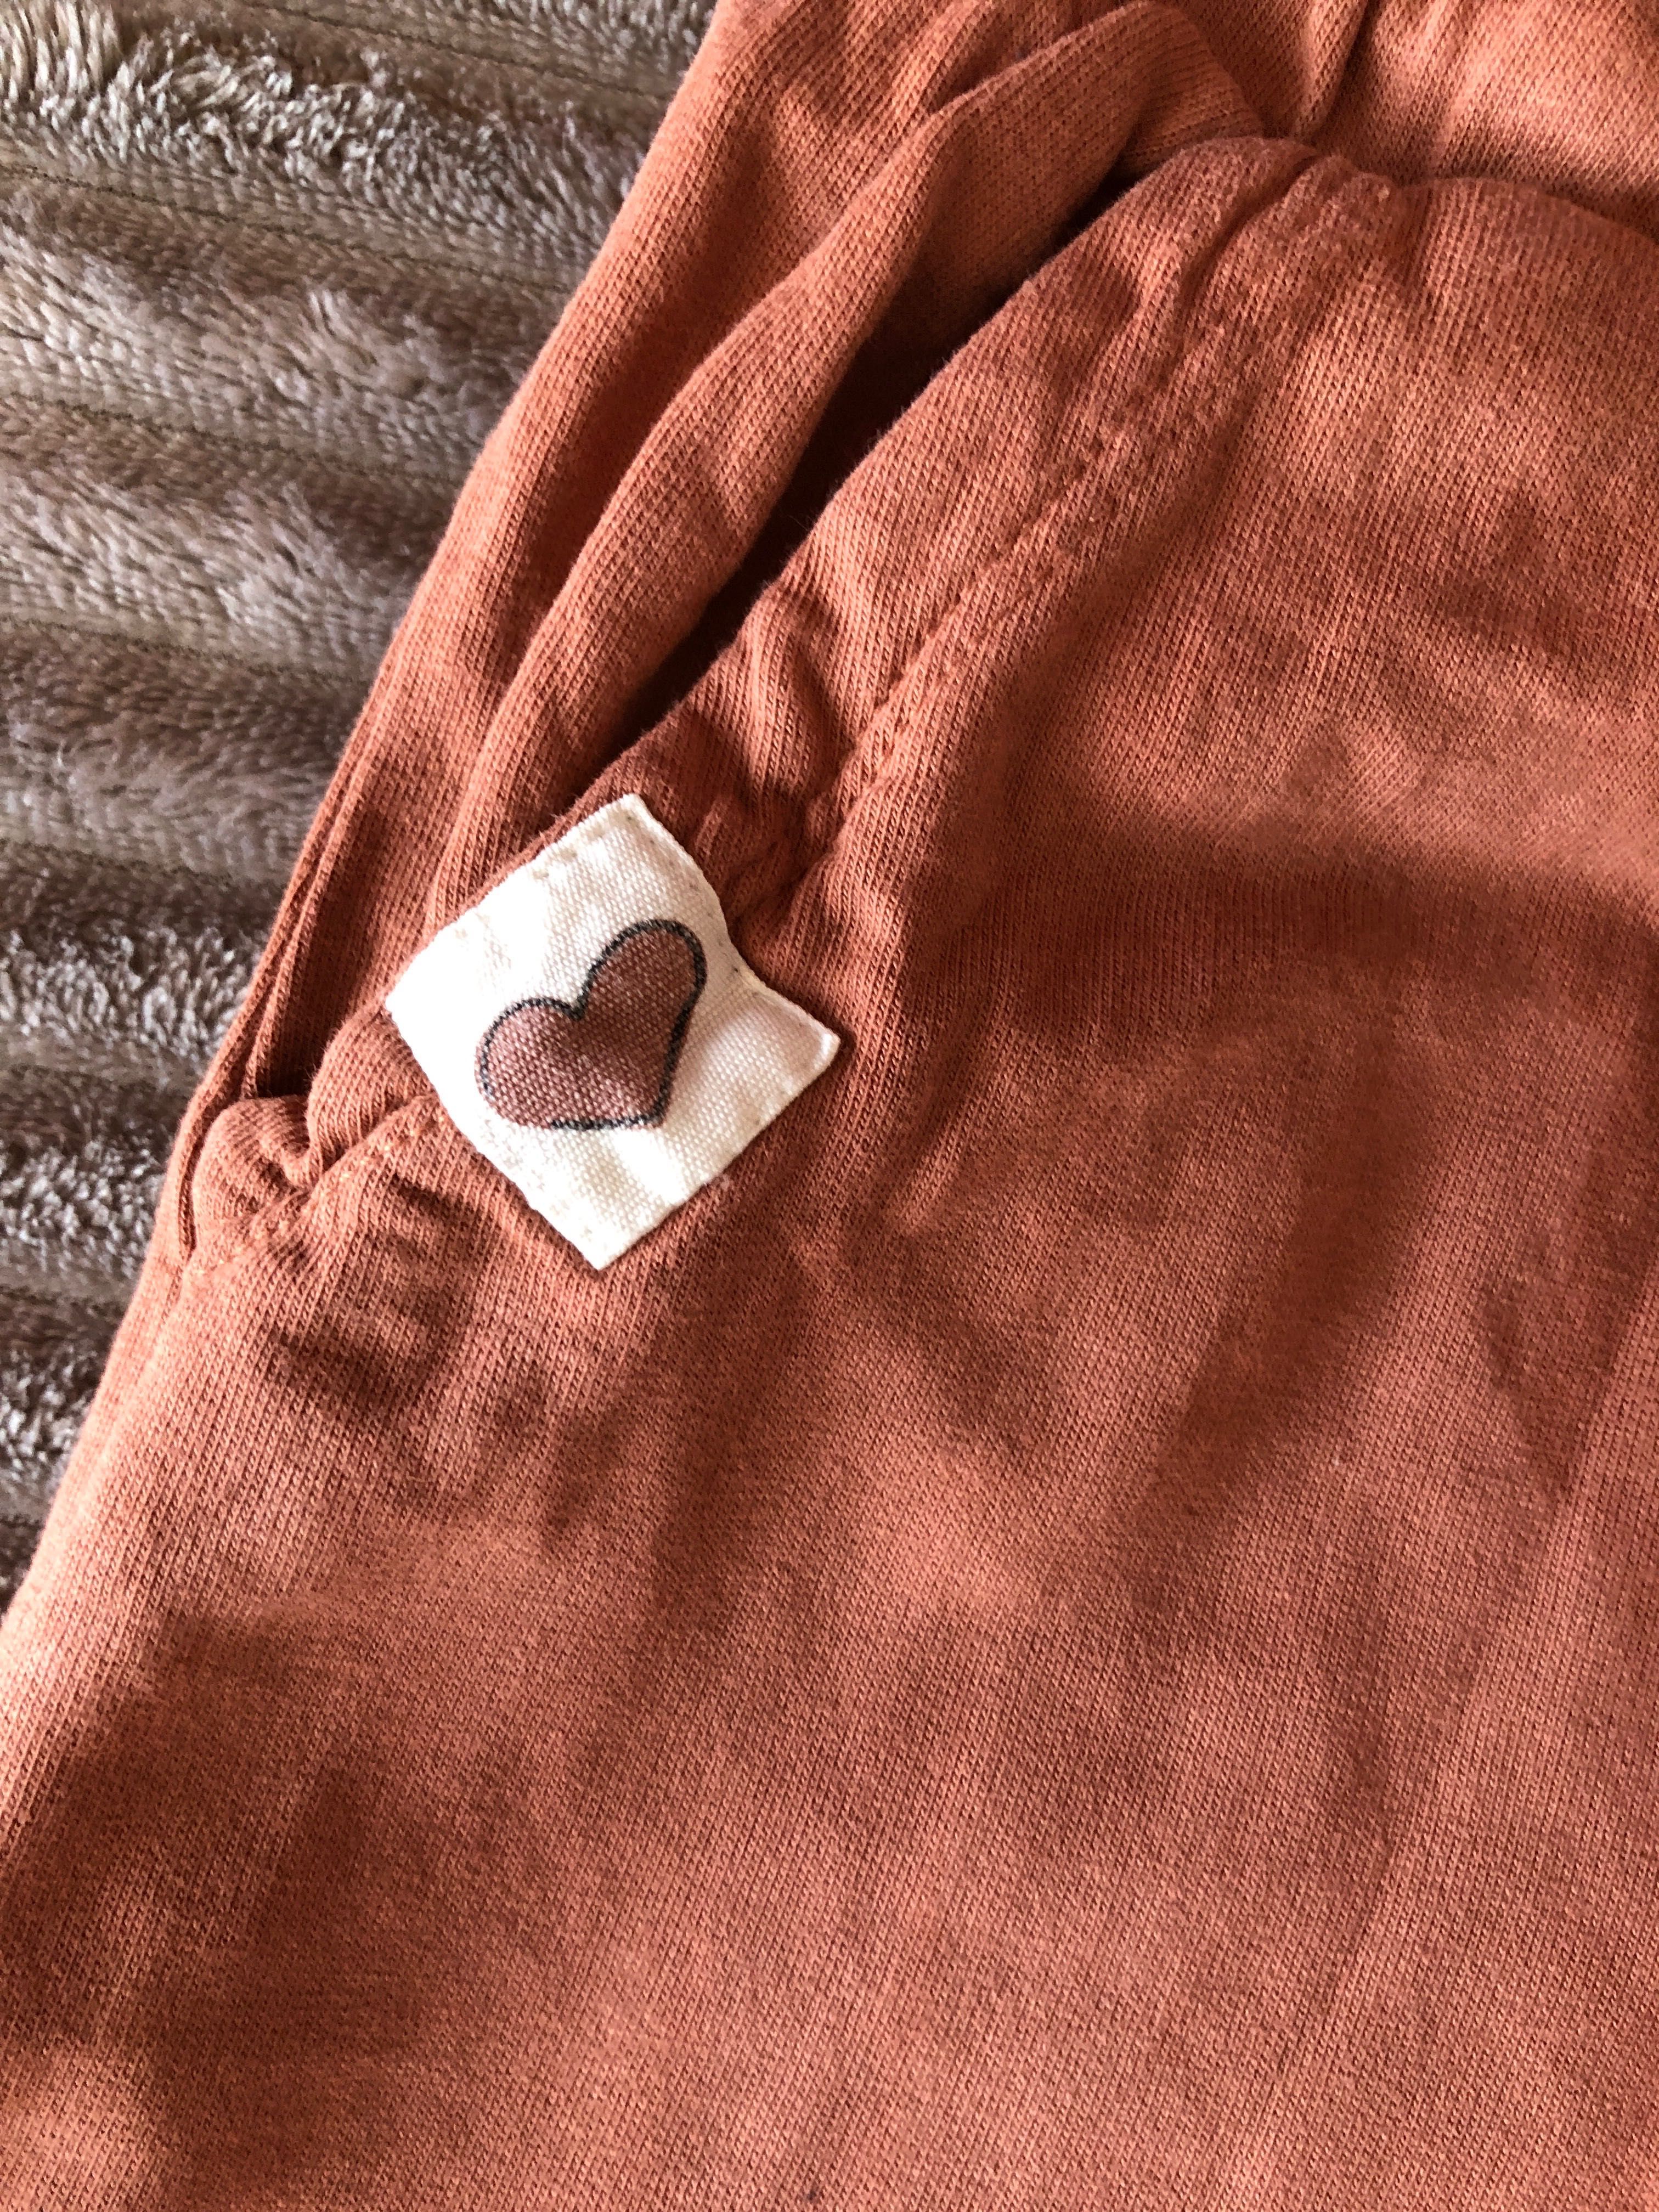 Spodnie dresowe karmelowe dla dziewczynki, rozmiar 110, Pepco